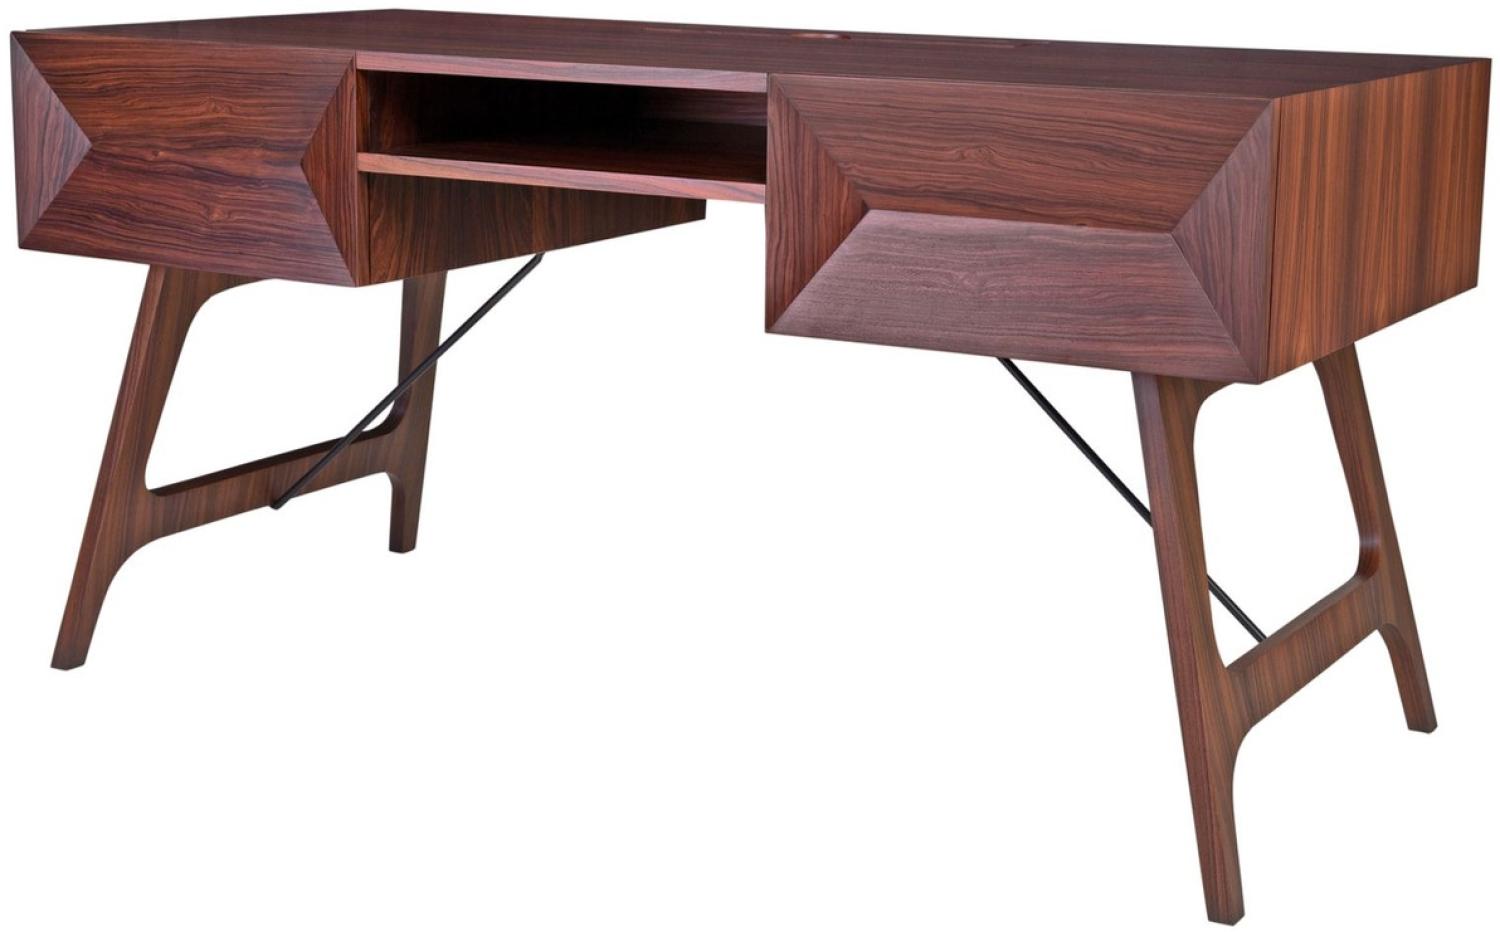 Casa Padrino Luxus Rosenholz Schreibtisch mit 2 Schubladen Braun 150 x 70 x H. 76 cm - Luxus Büromöbel Bild 1